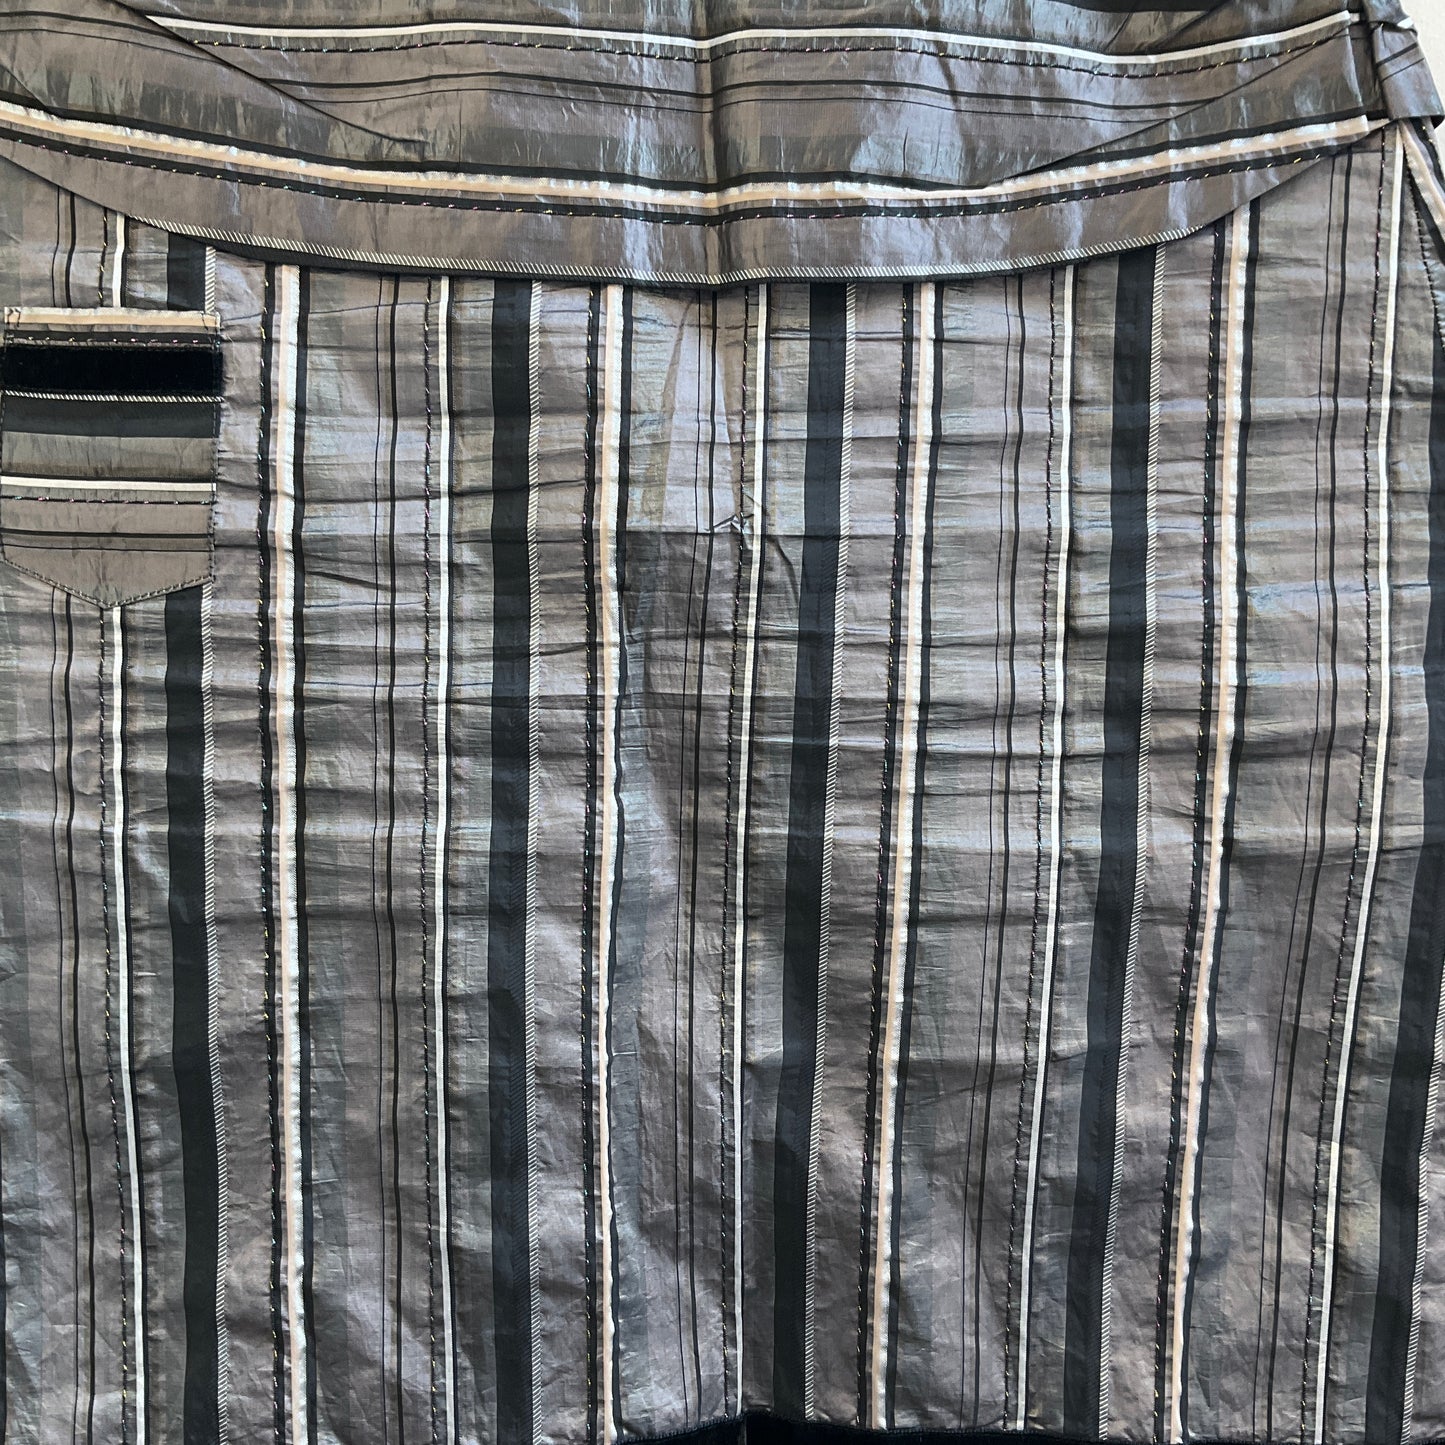 Scintilla - Grey Skirt